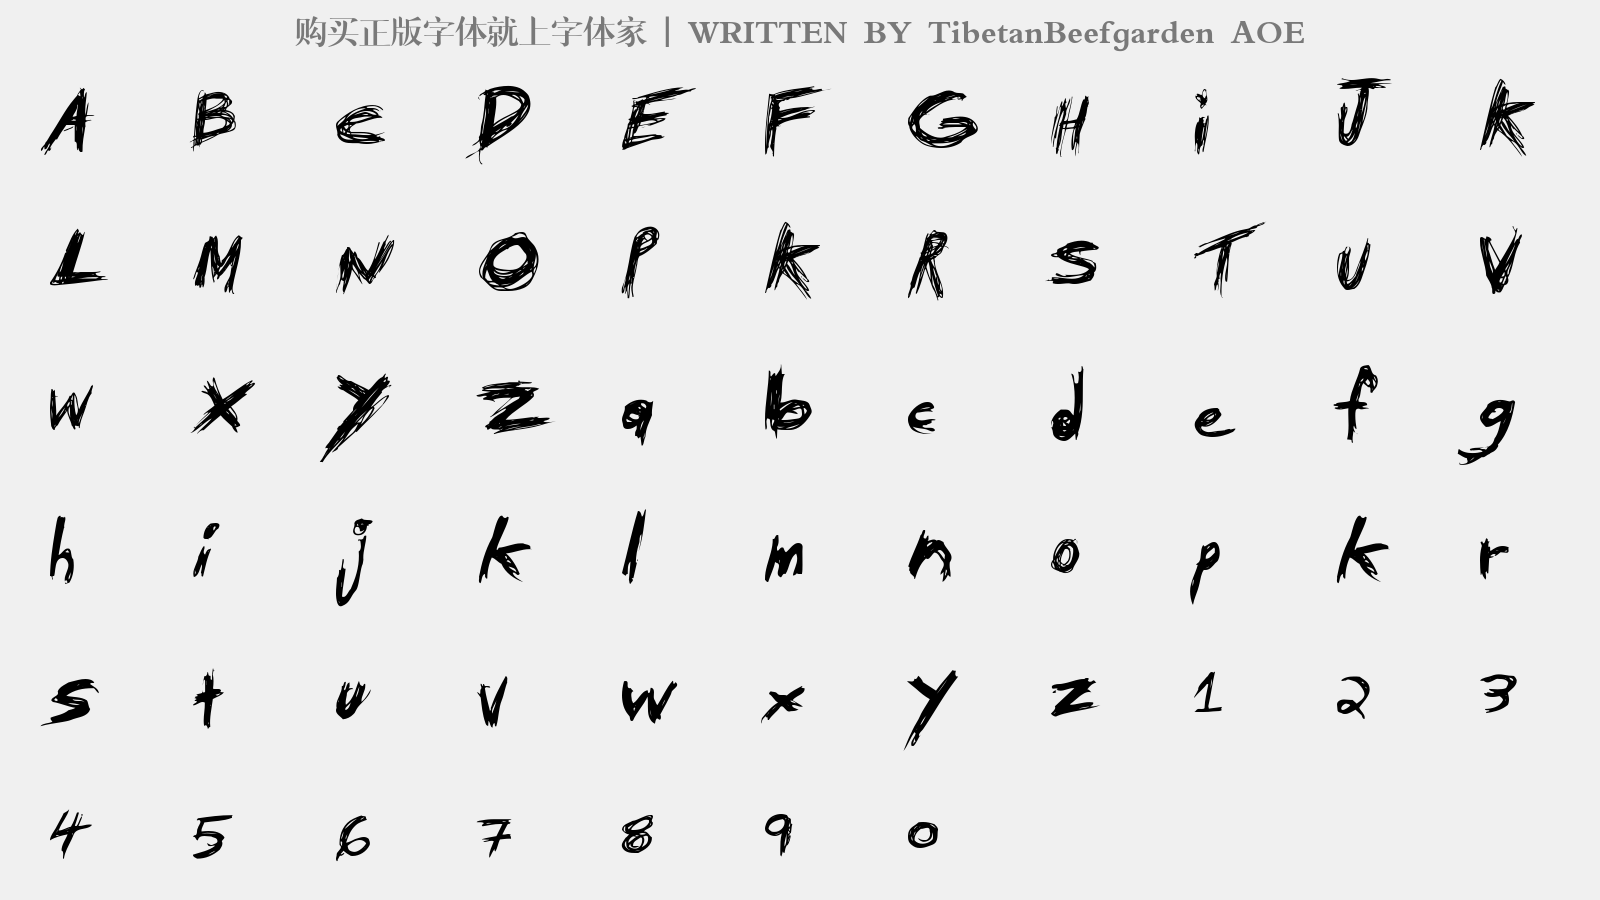 TibetanBeefgarden AOE - 大写字母/小写字母/数字